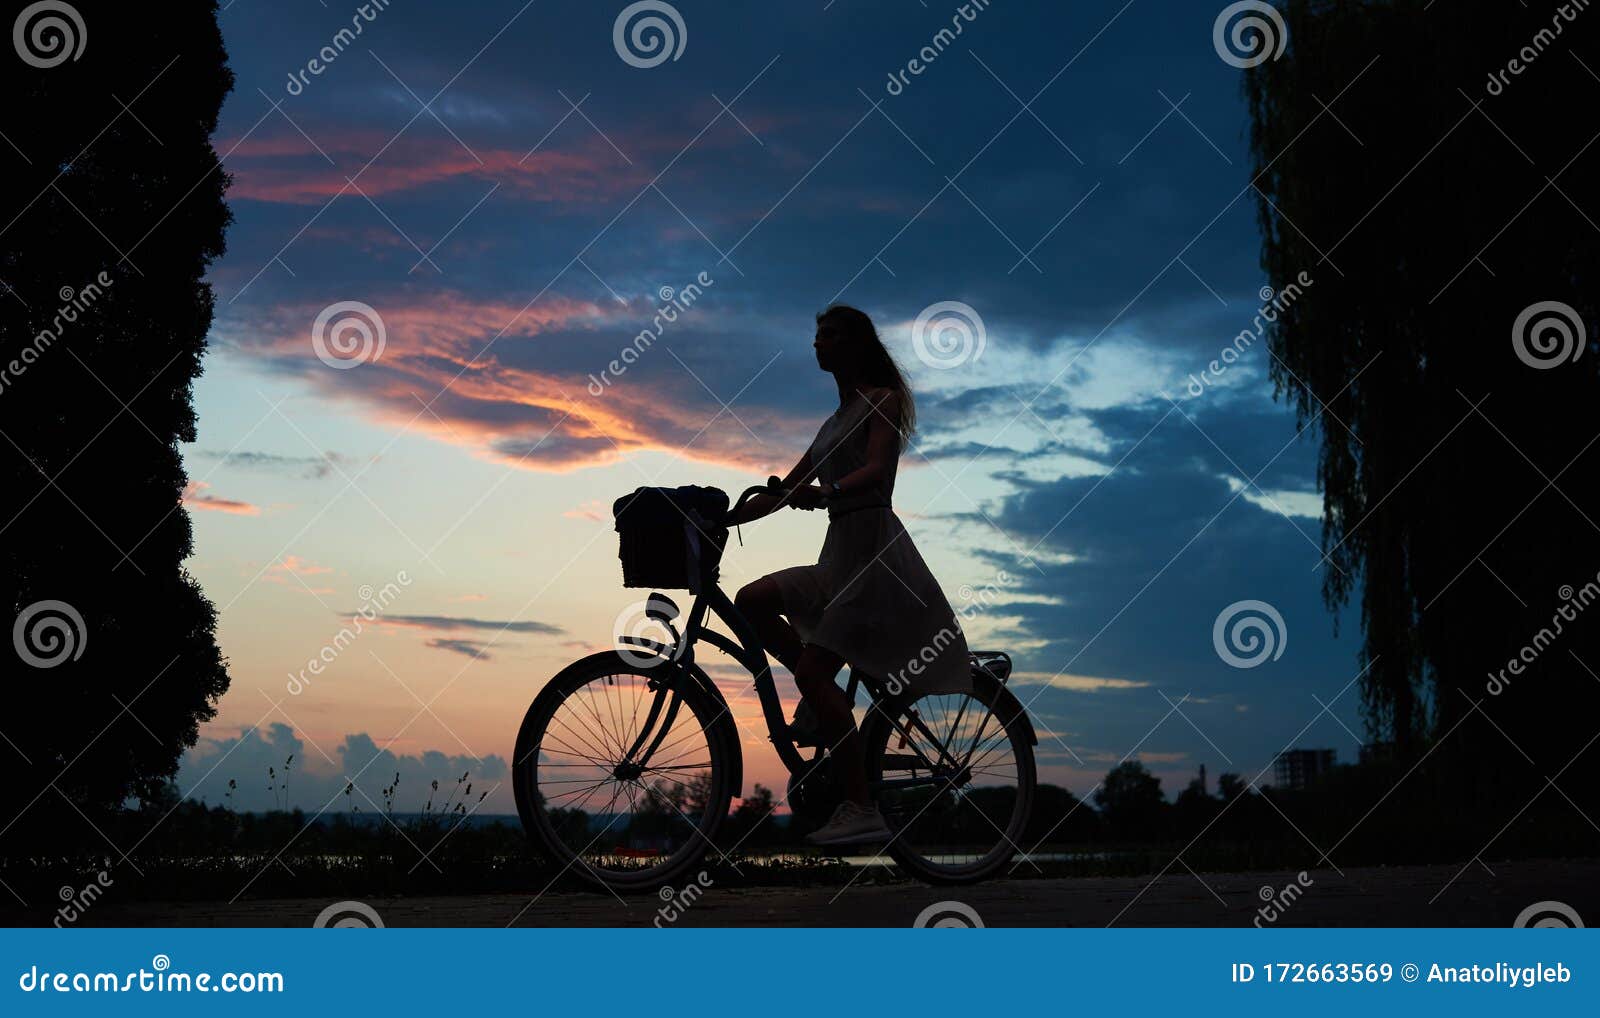 那些骑自行车的美人儿 - 普象网